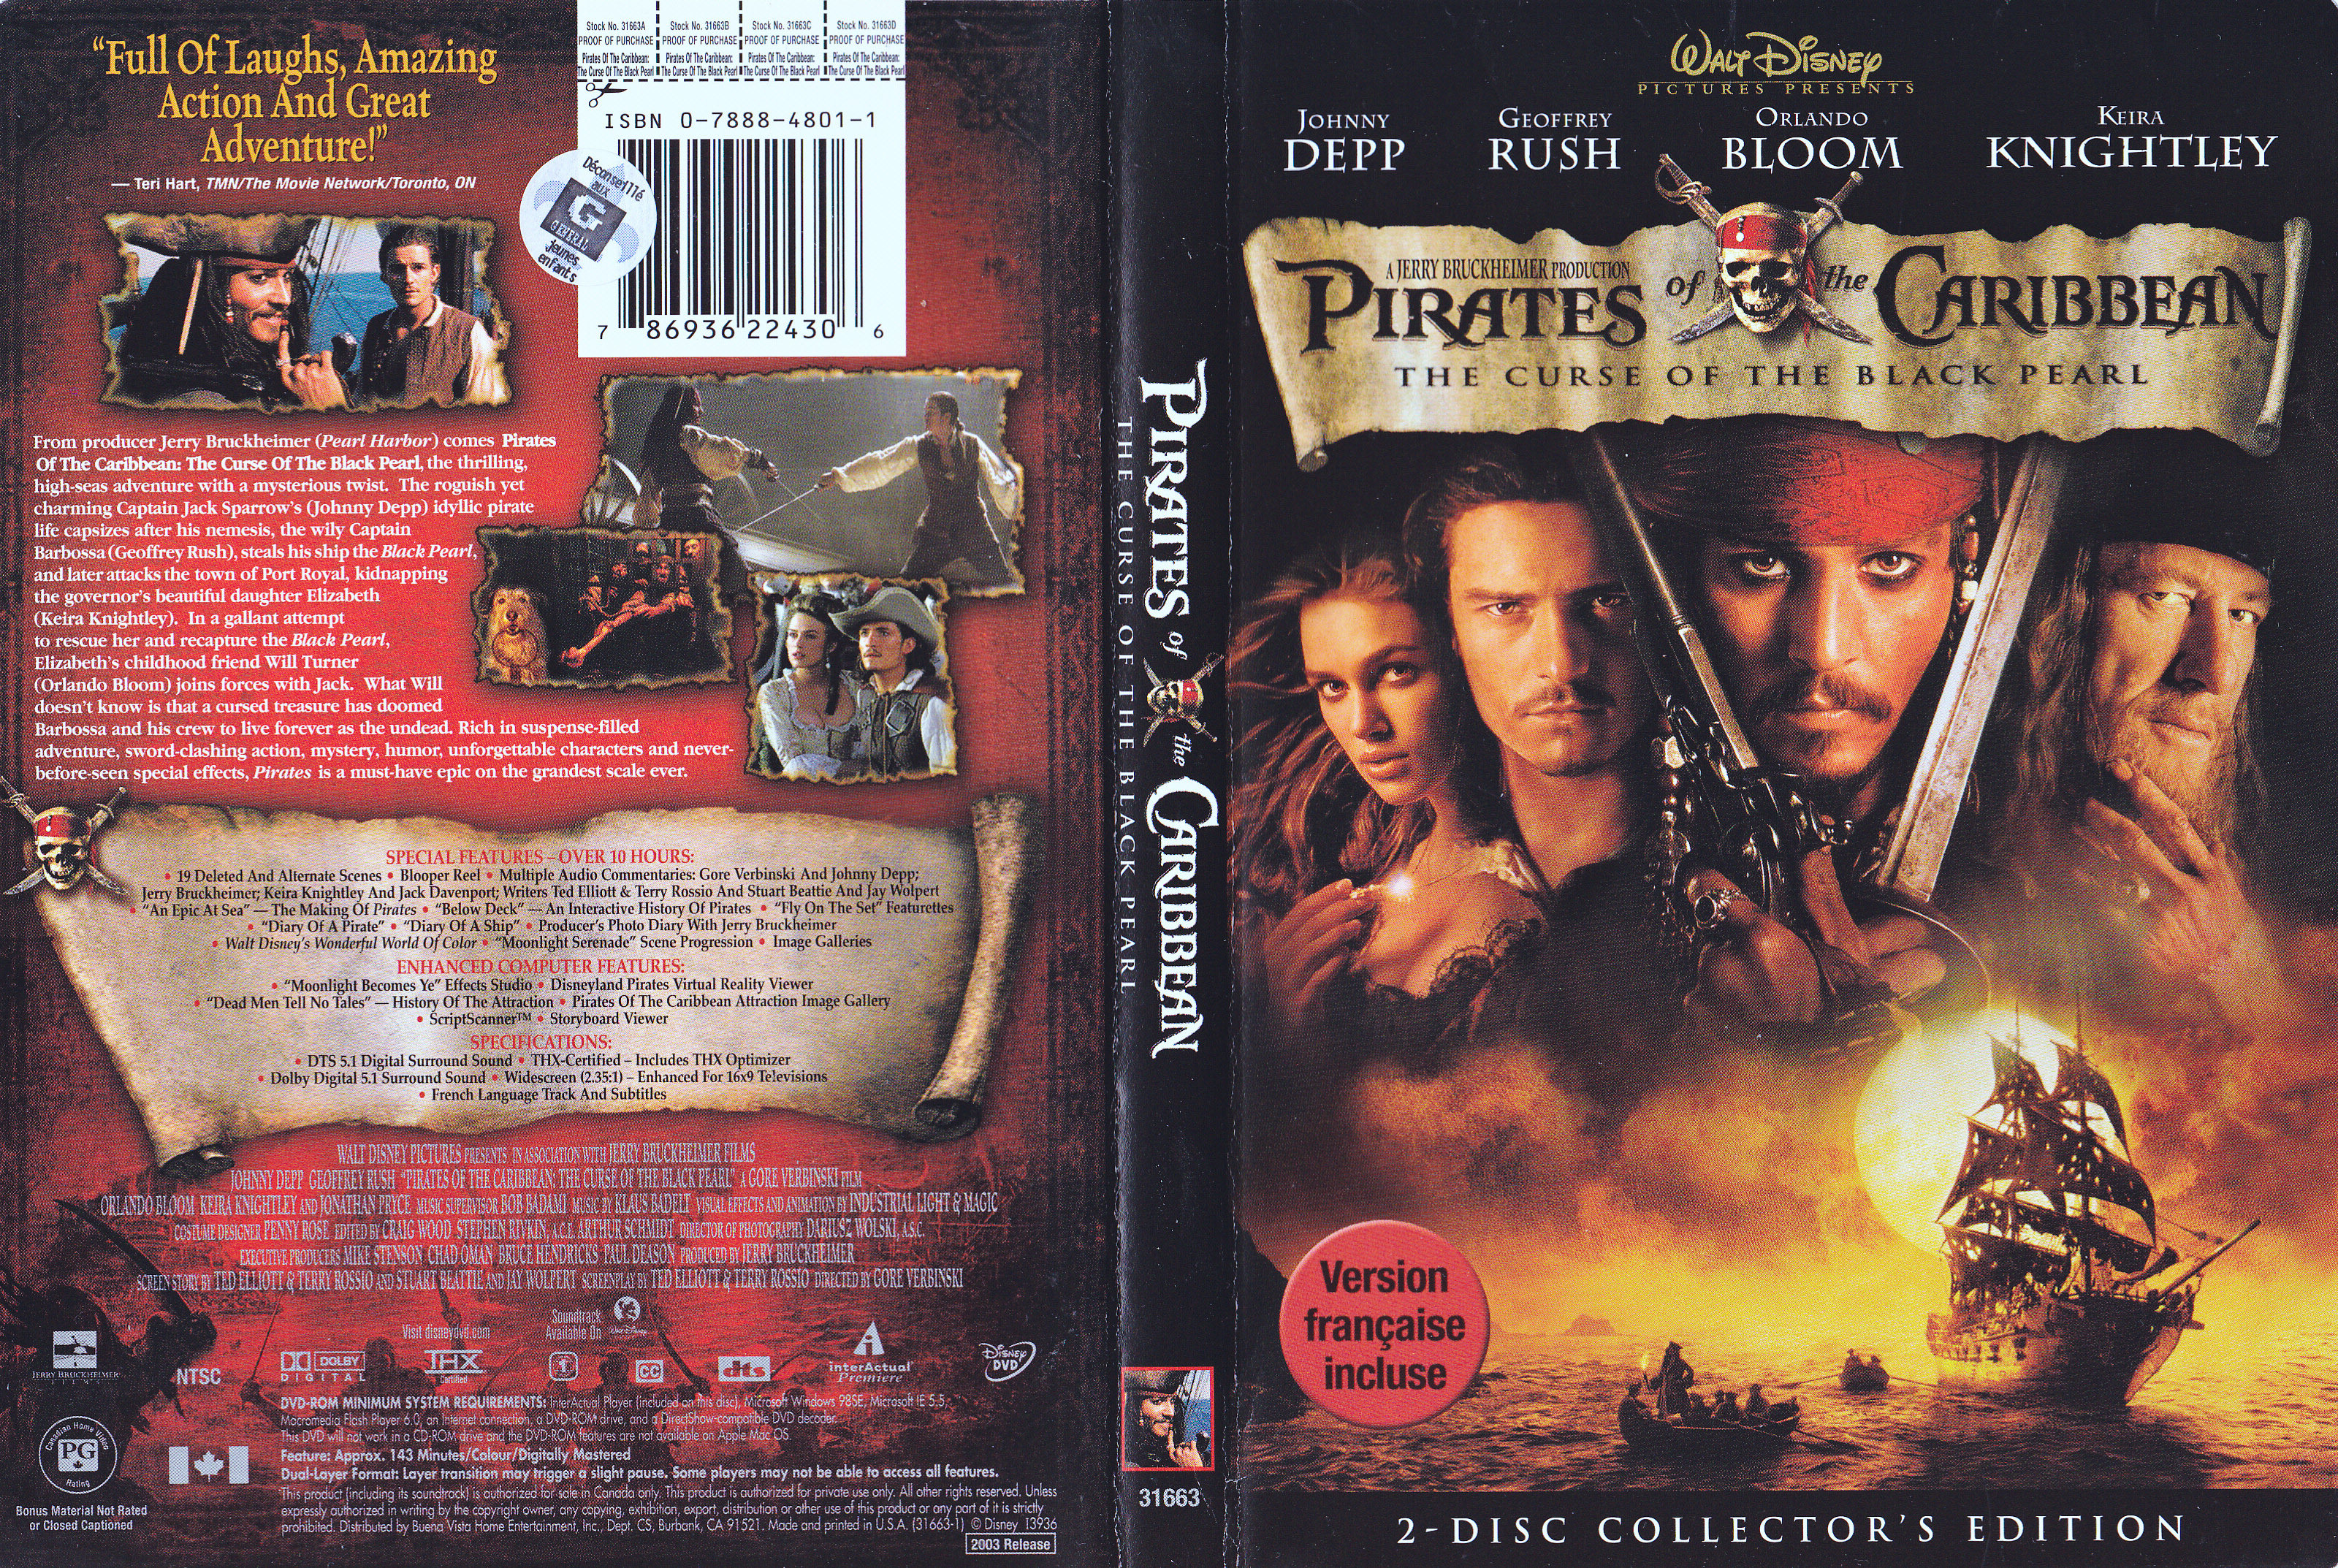 Jaquette DVD Pirates des caraibes - La course du black pearl (Canadienne)